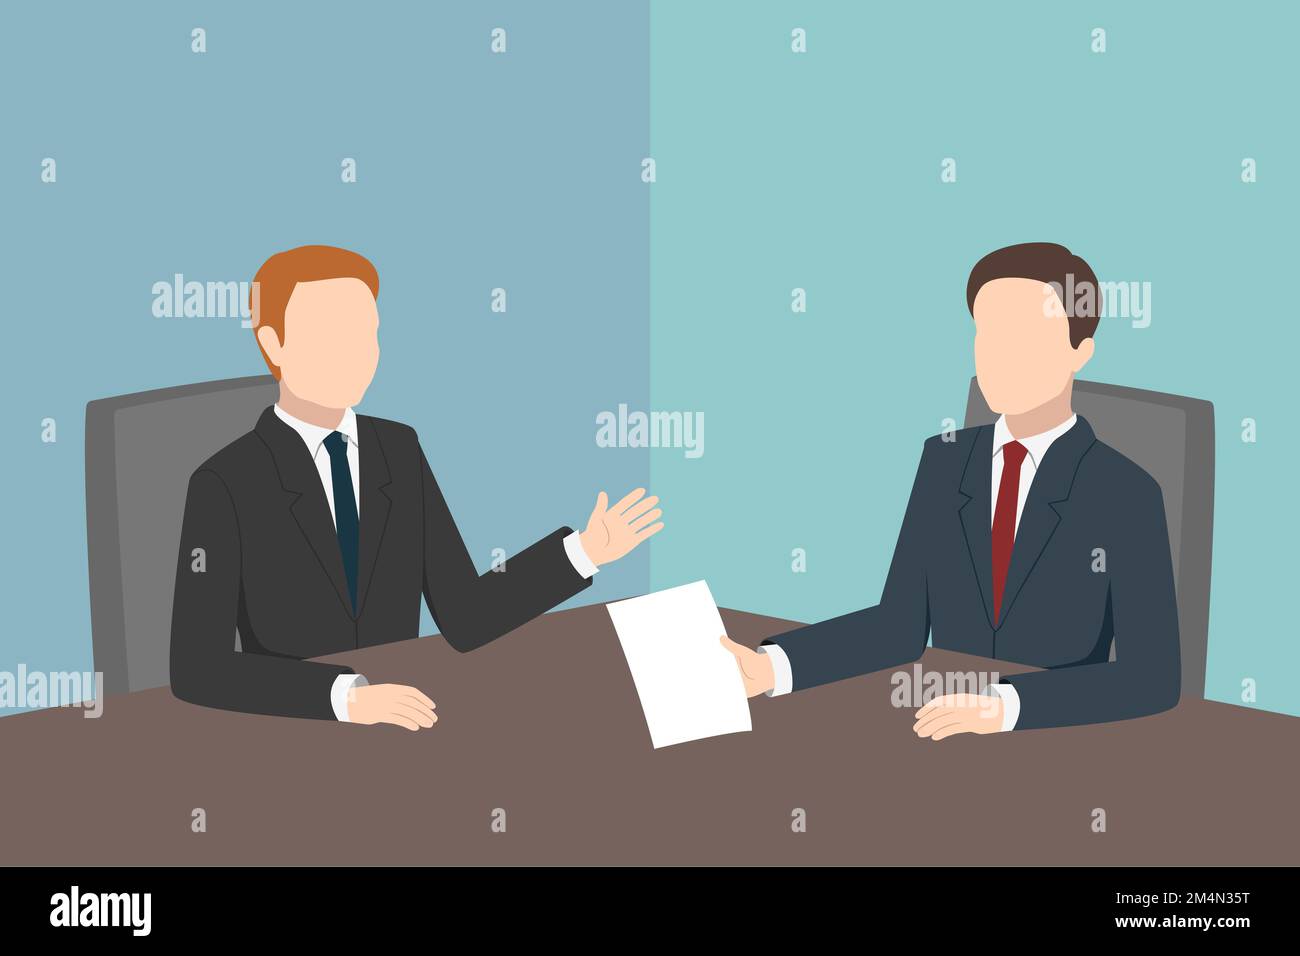 Les partenaires d'affaires discutent de la transaction dans la salle de réunion. Illustration vectorielle. Illustration de Vecteur